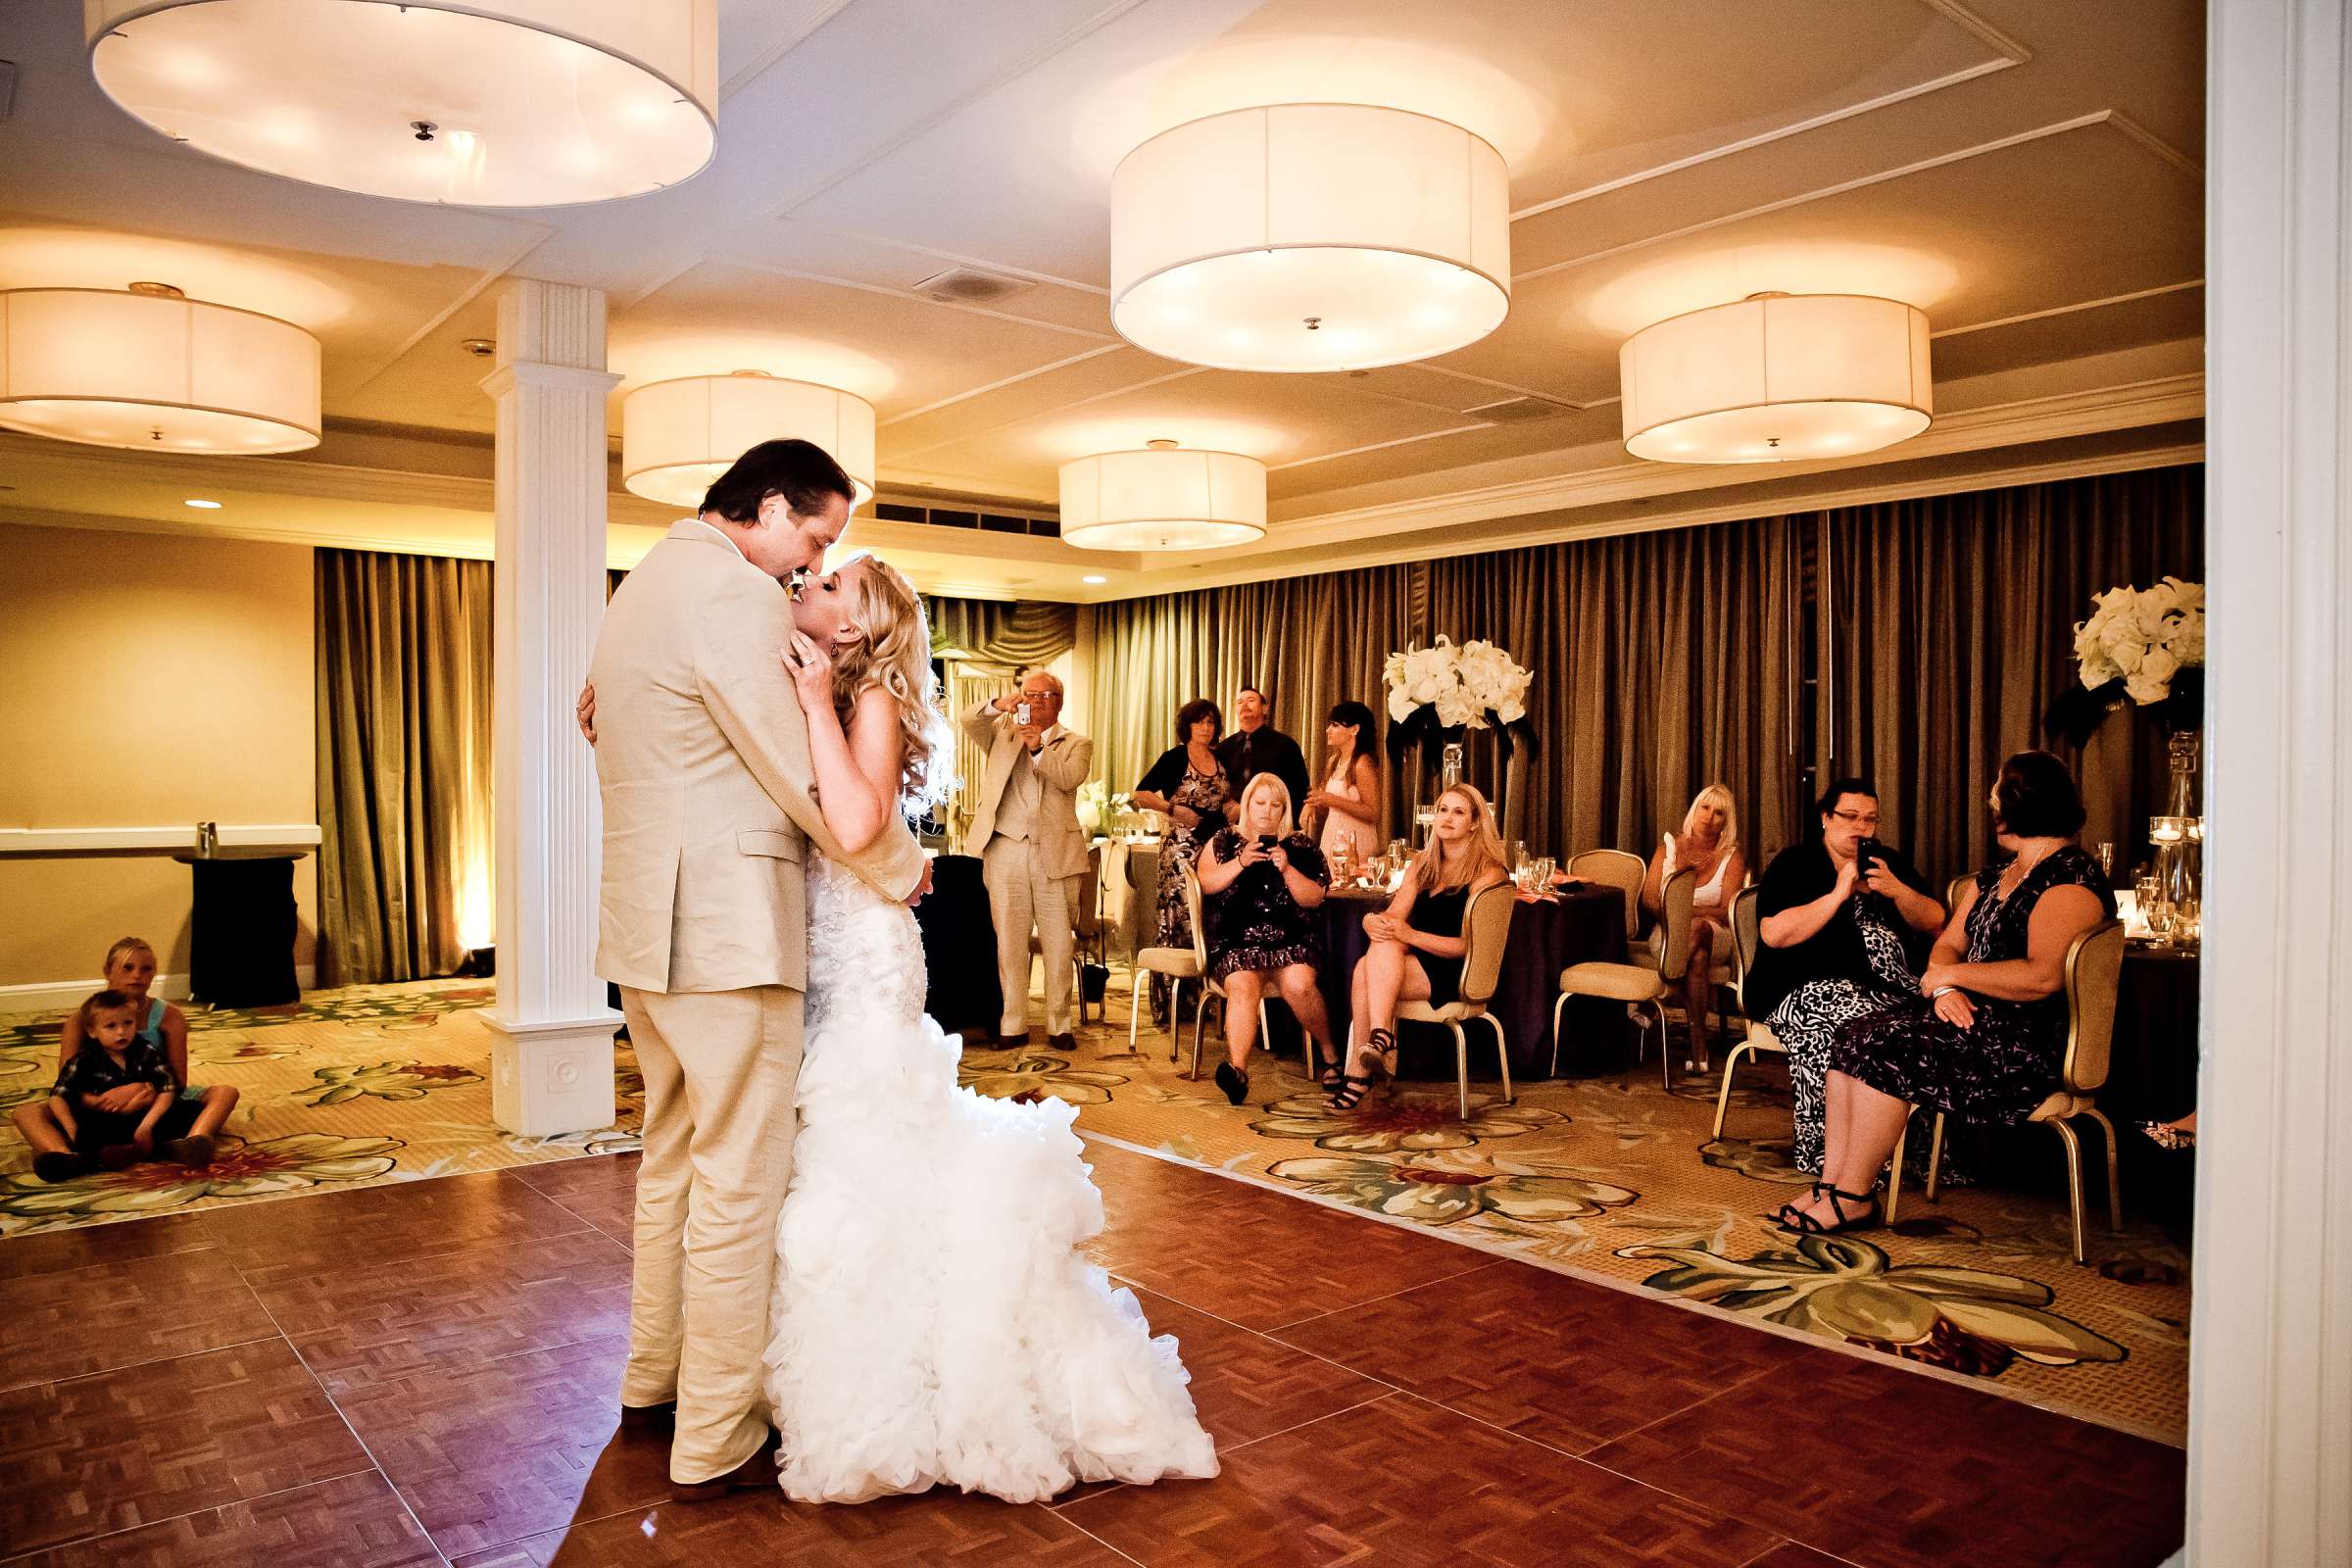 Hotel Del Coronado Wedding, Sarah and Tony Wedding Photo #323770 by True Photography